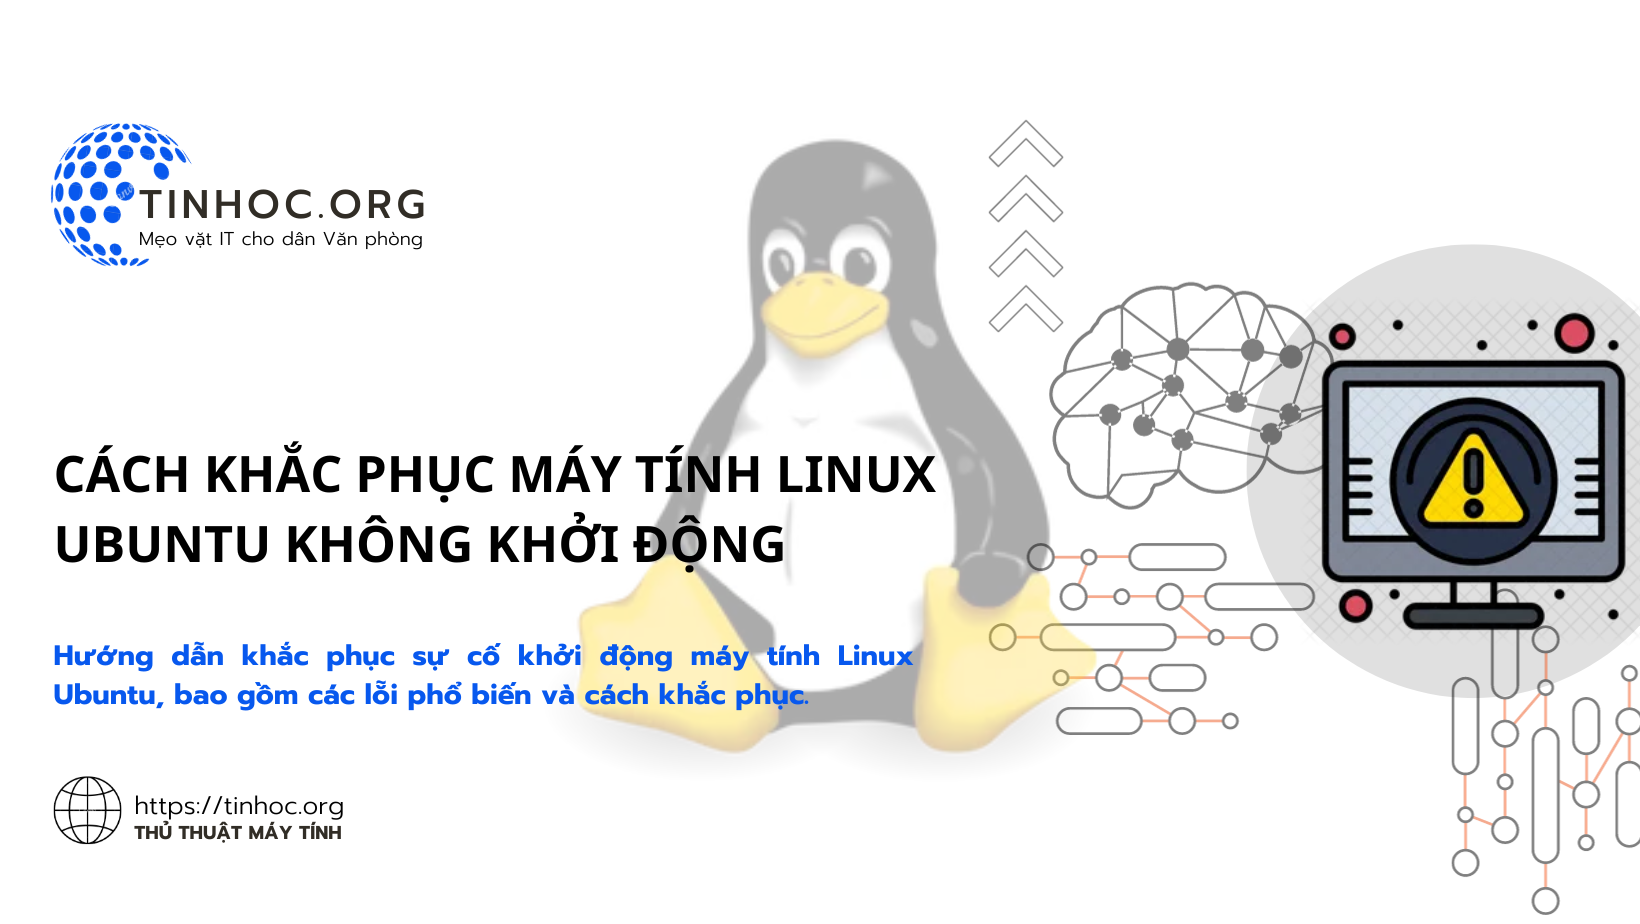 Cách khắc phục máy tính Linux Ubuntu không khởi động